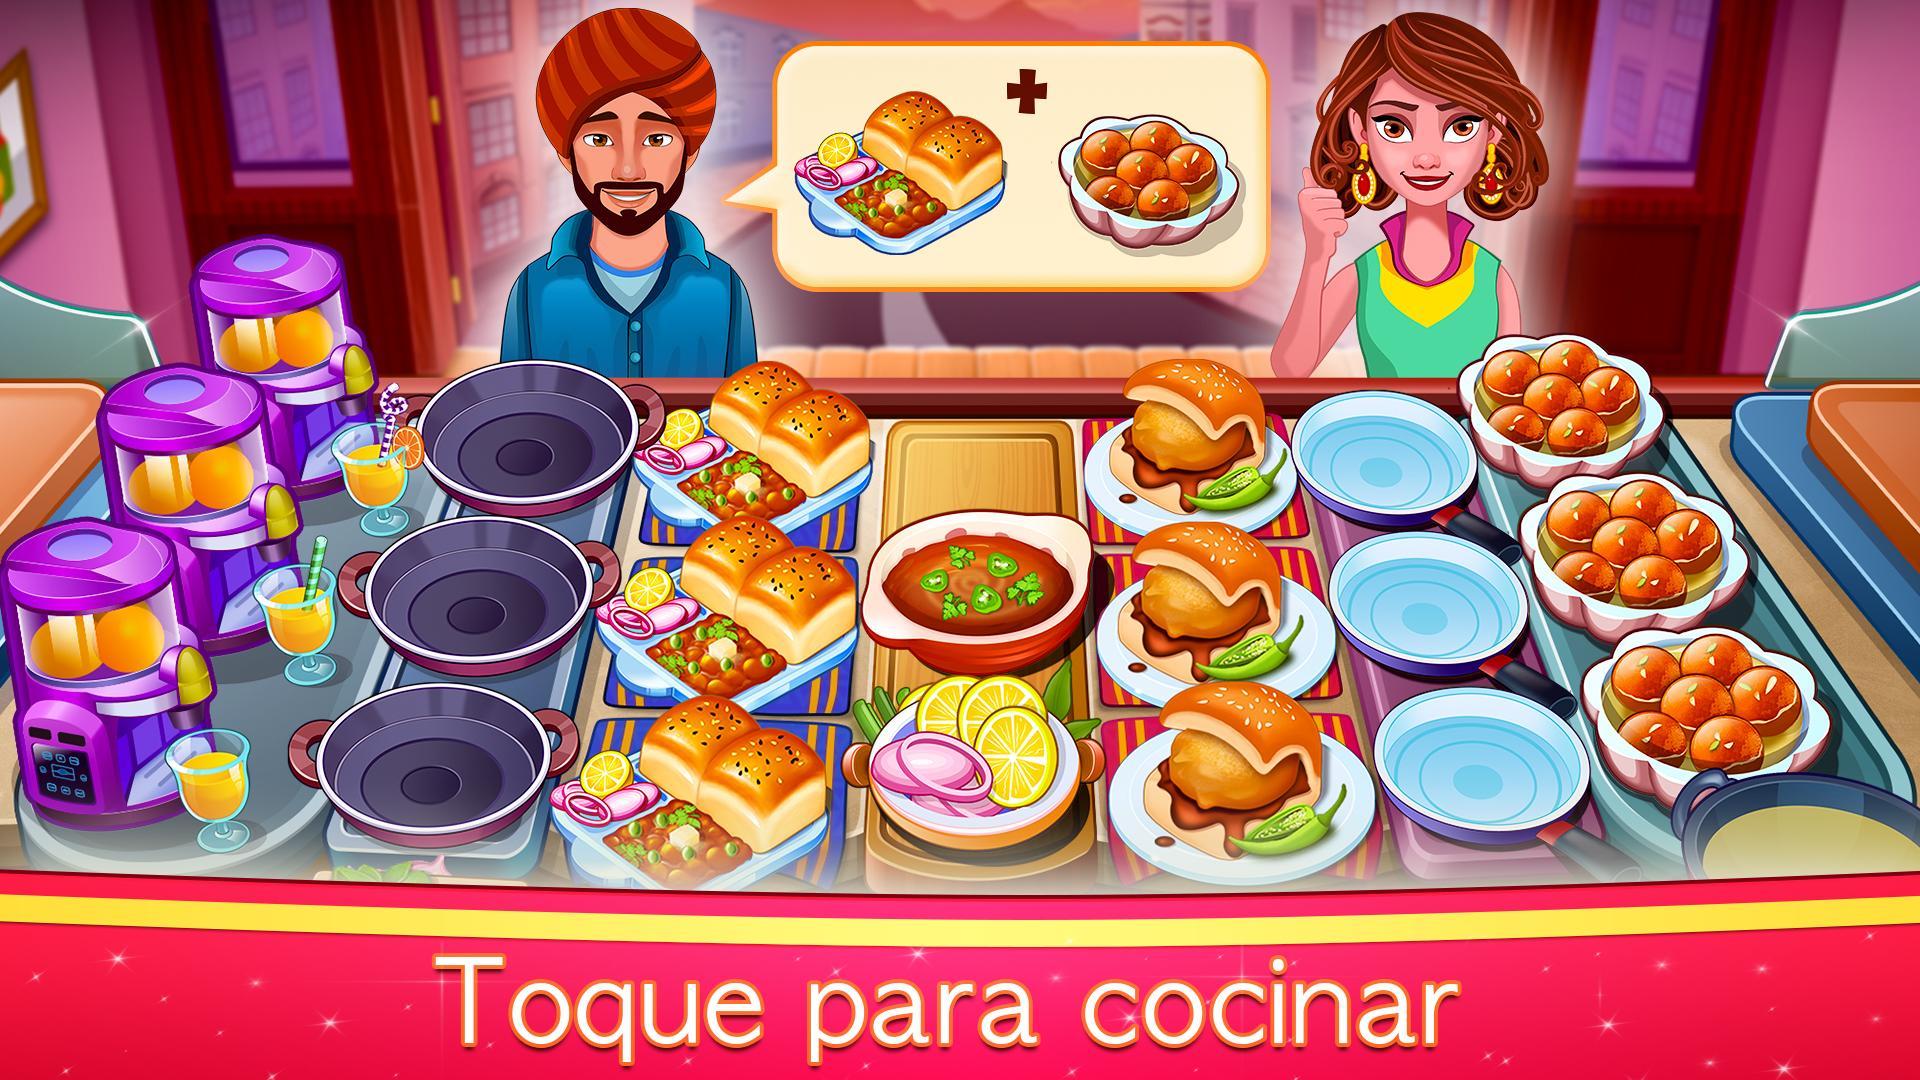 40 Best Pictures Cocinas Juegos Gratis / Restaurante Juegos de Cocina. for Android - APK Download